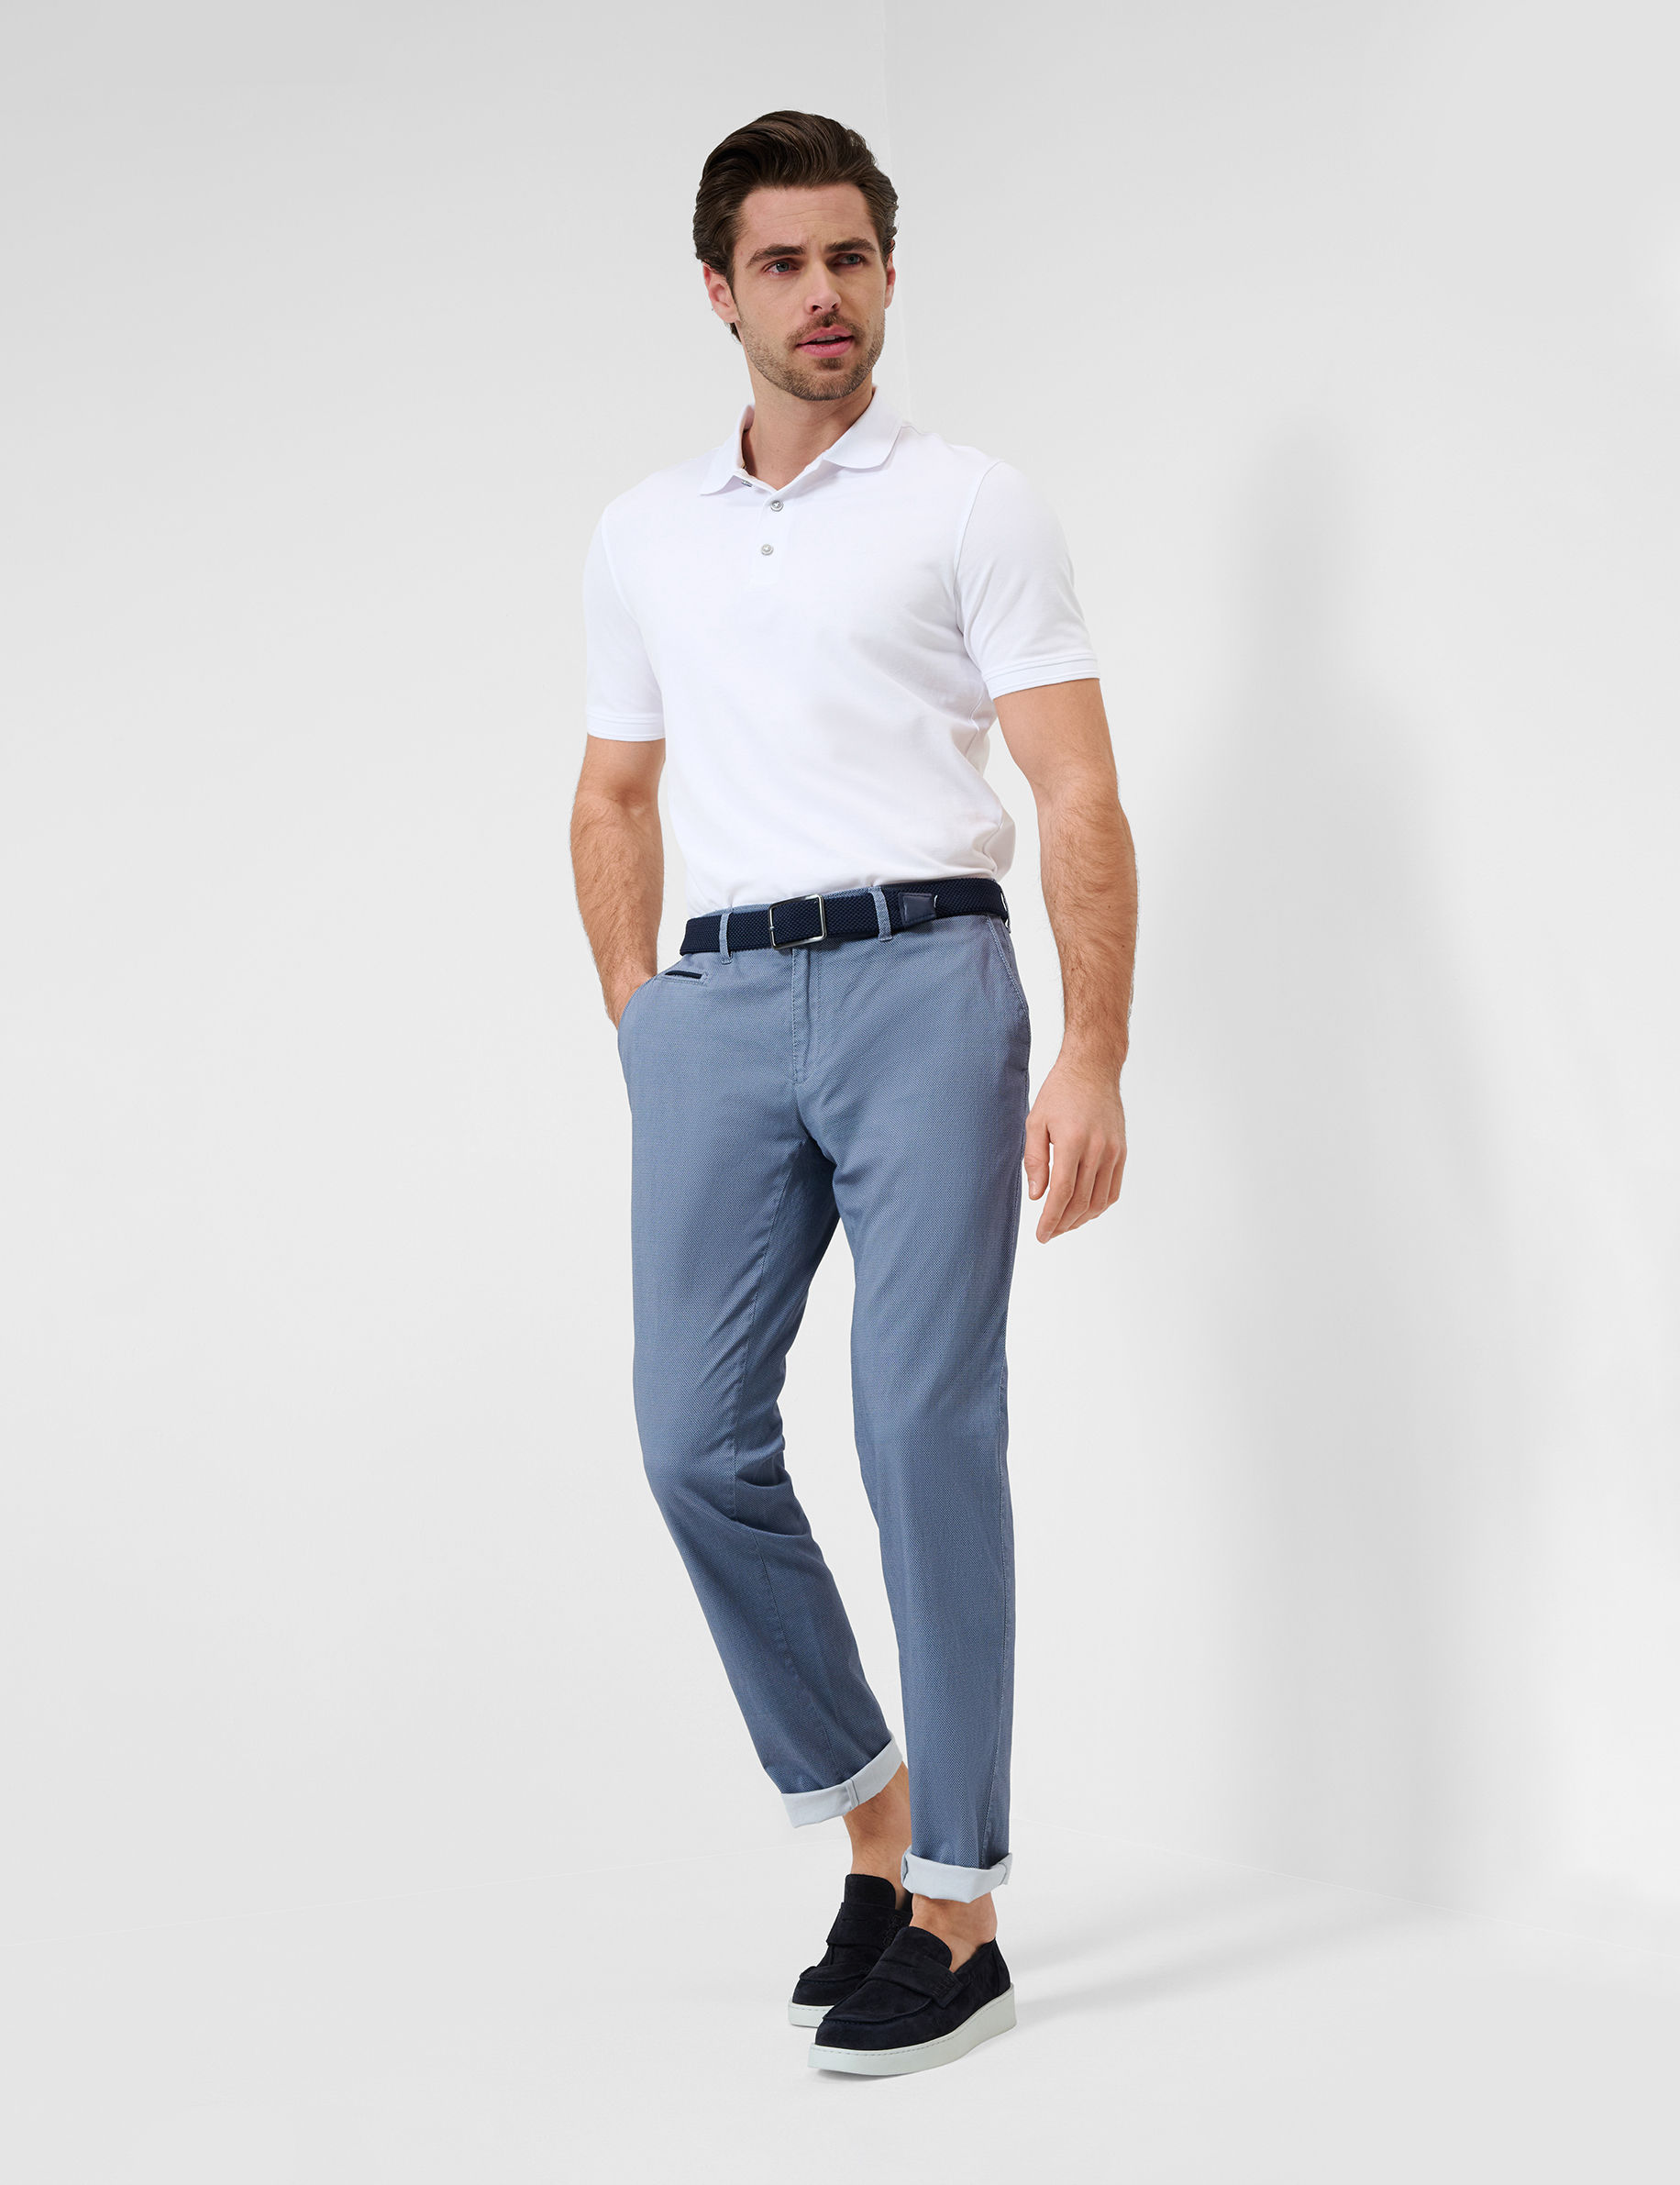 Men Style FABIO DUSTY BLUE Modern Fit Model Outfit